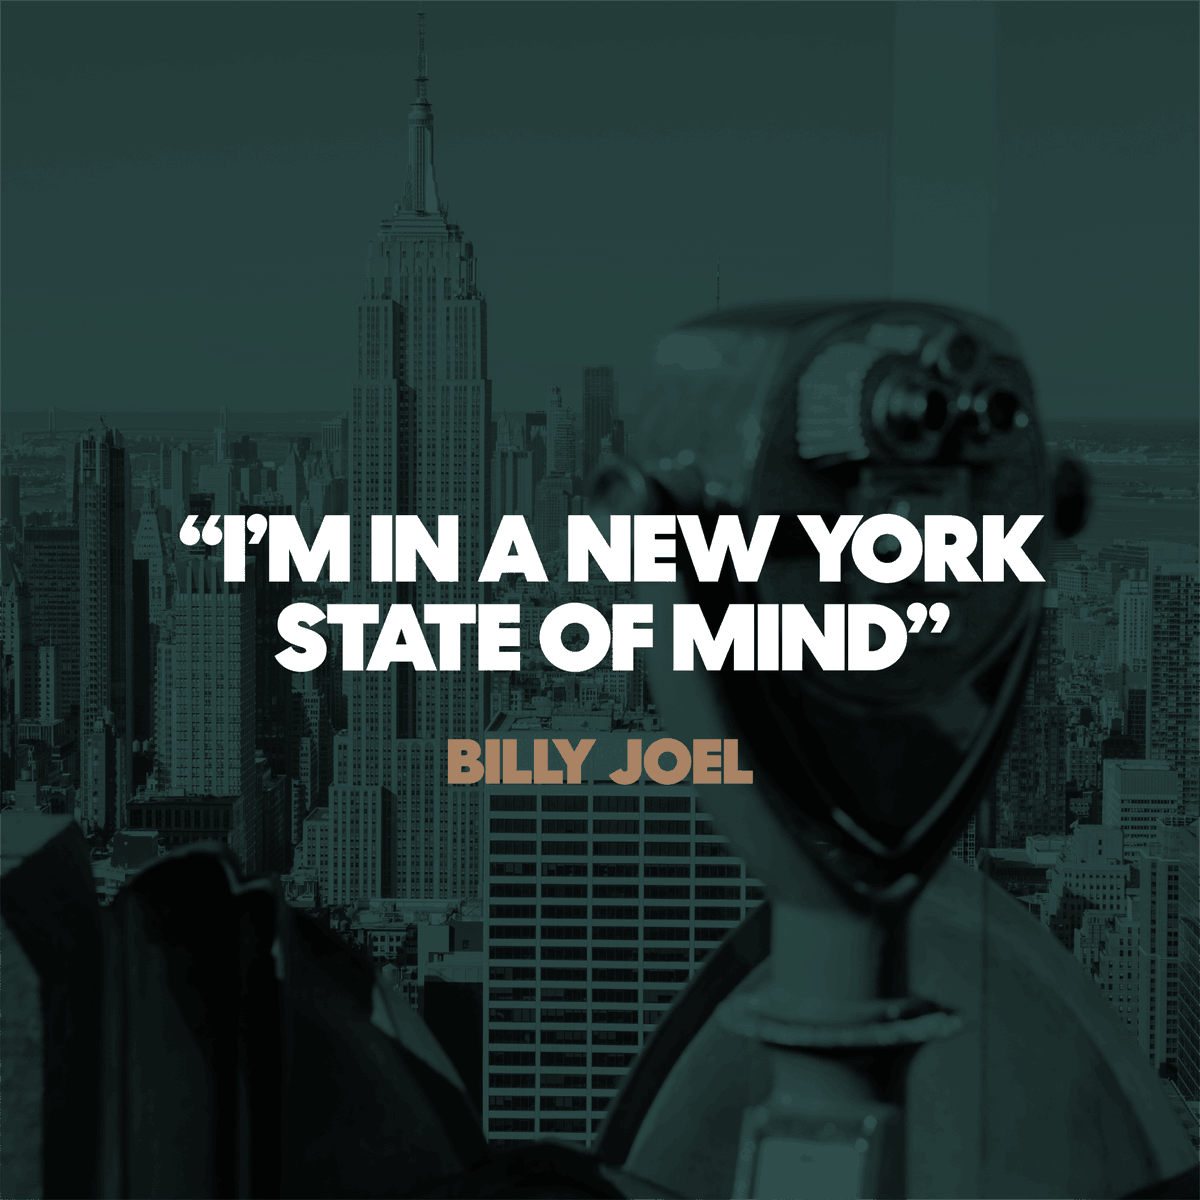 Billy Joel gets it.